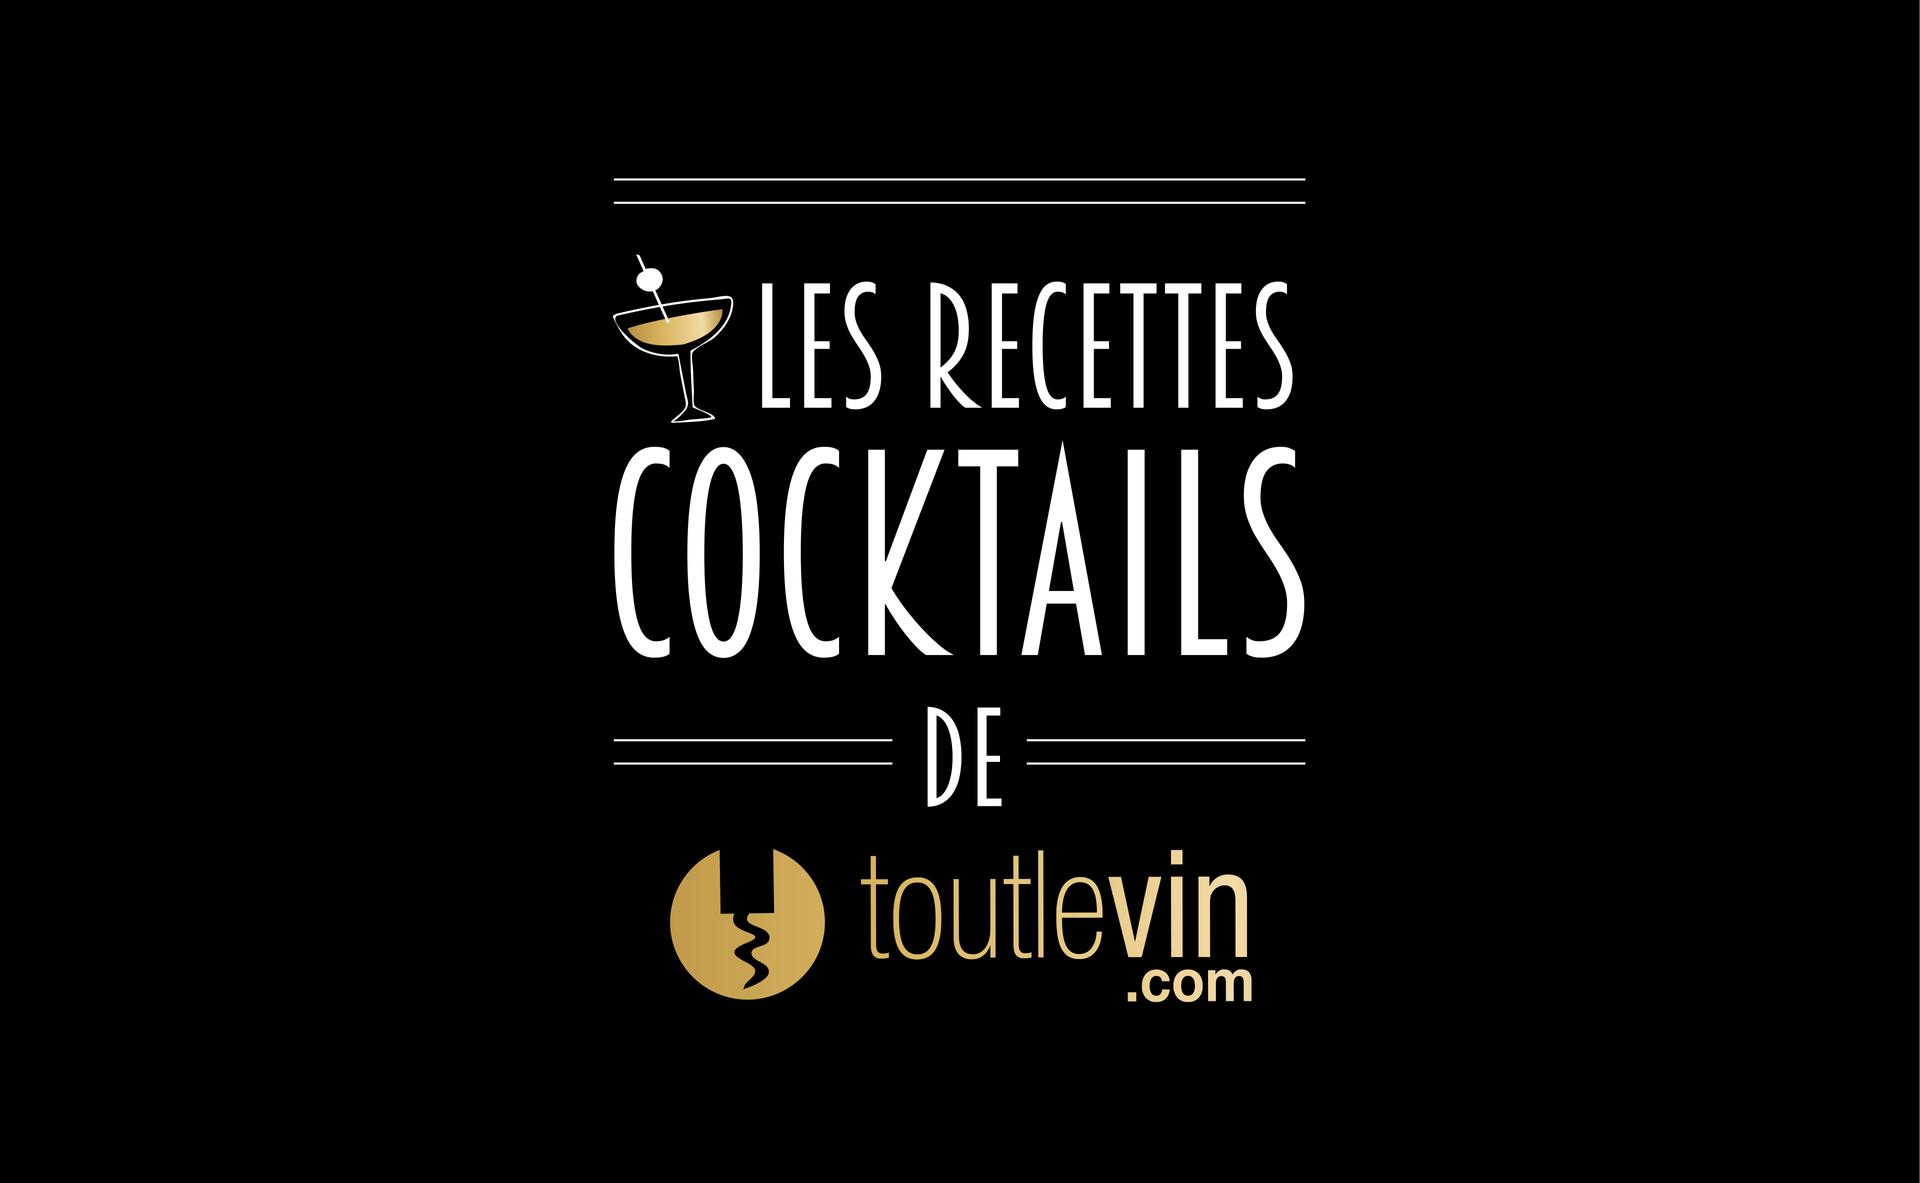 Devenez barman en réalisant vos cocktails maison !